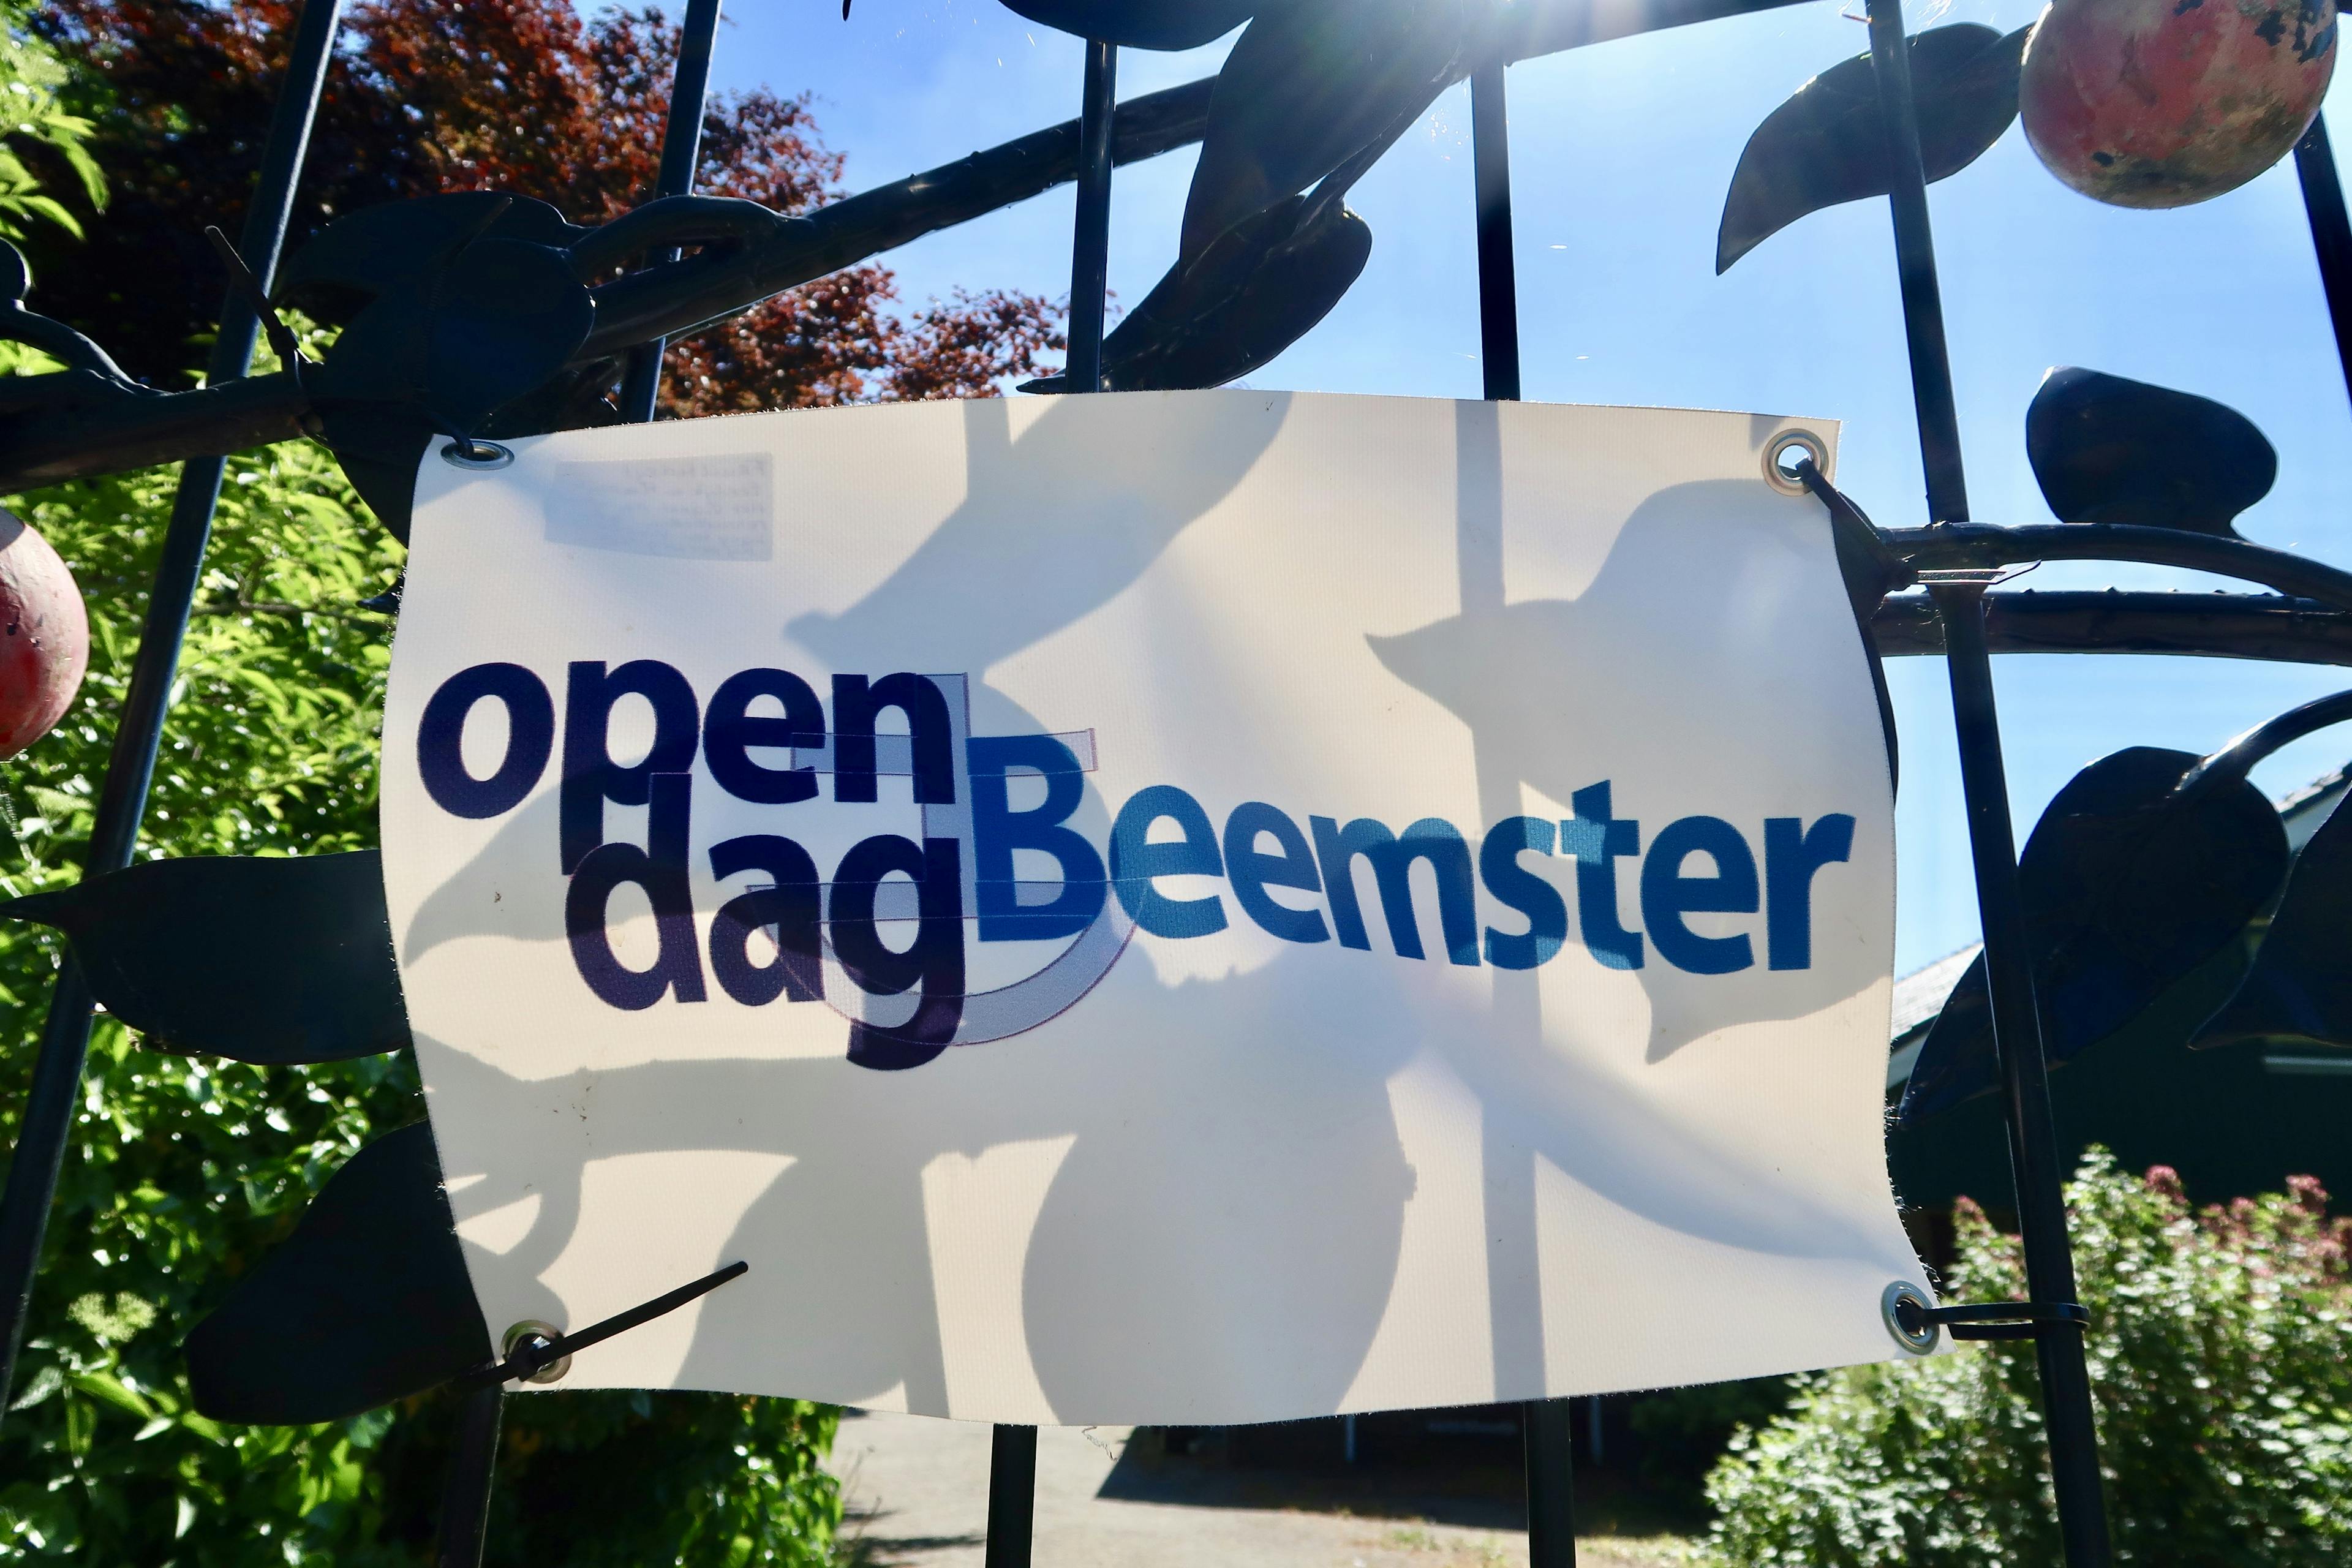 Open Dag Beemster